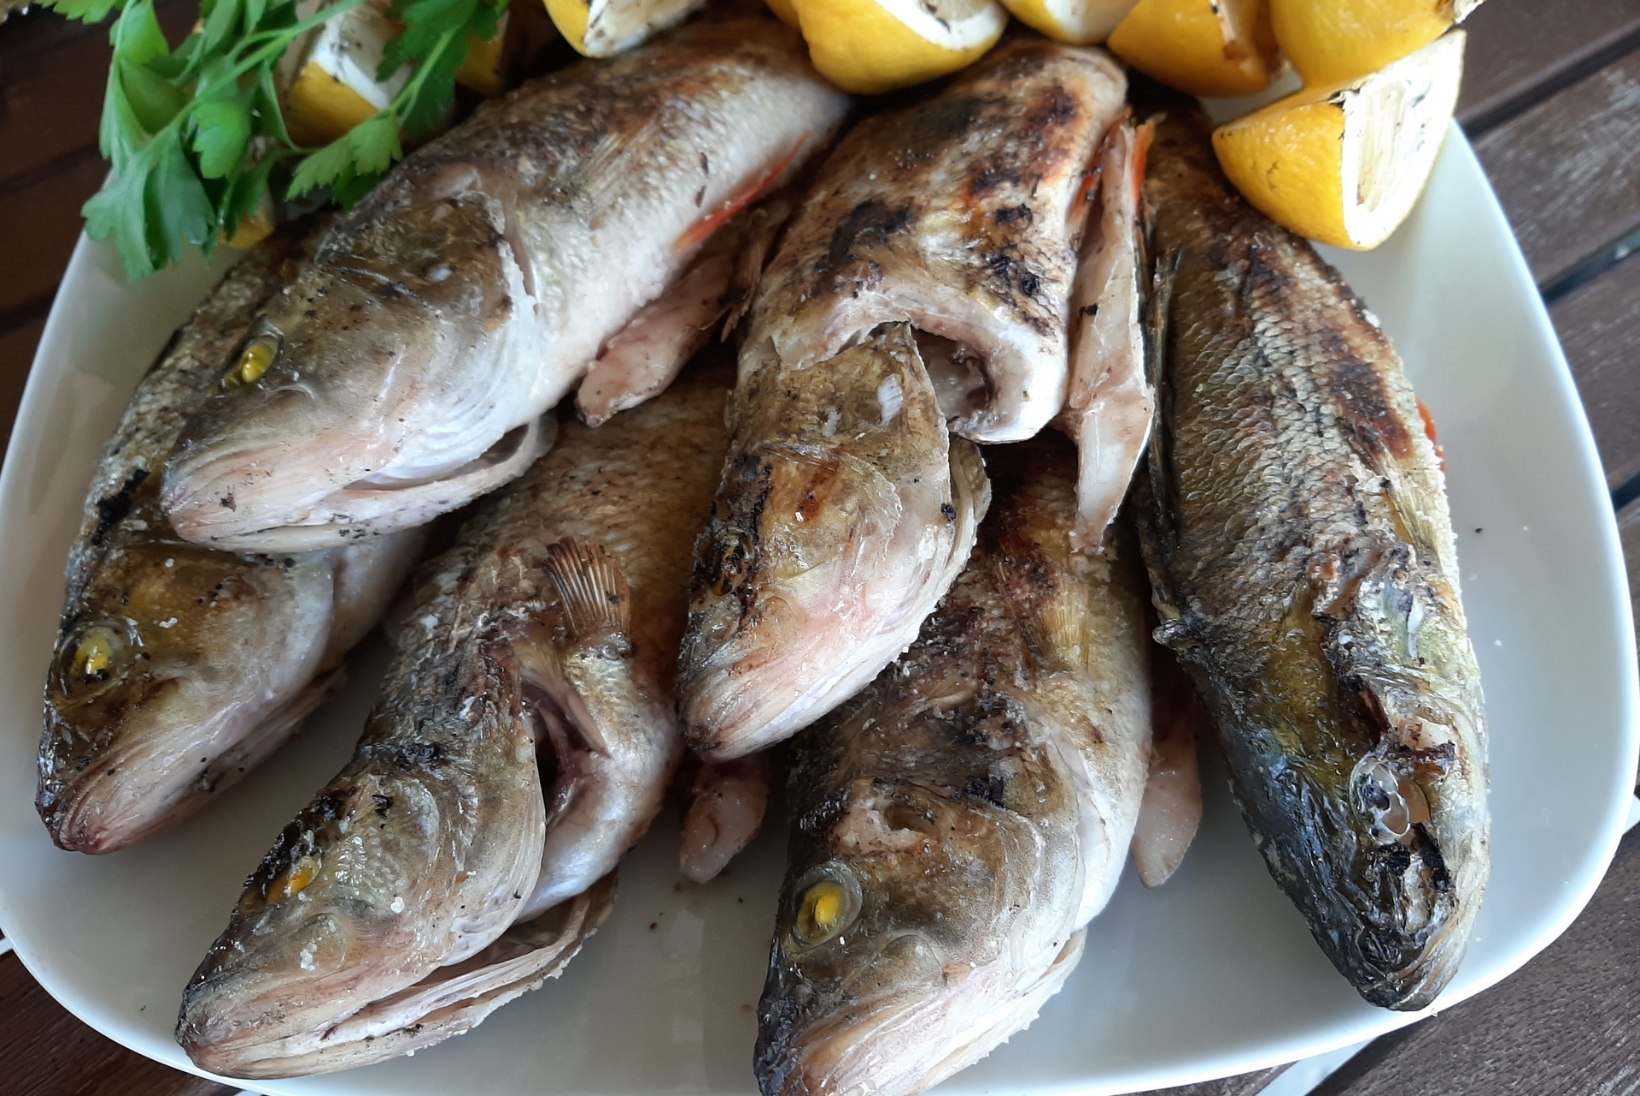 Kokad kinnitavad: kõige värskemat kala saad ikka kalamehe enda käest 